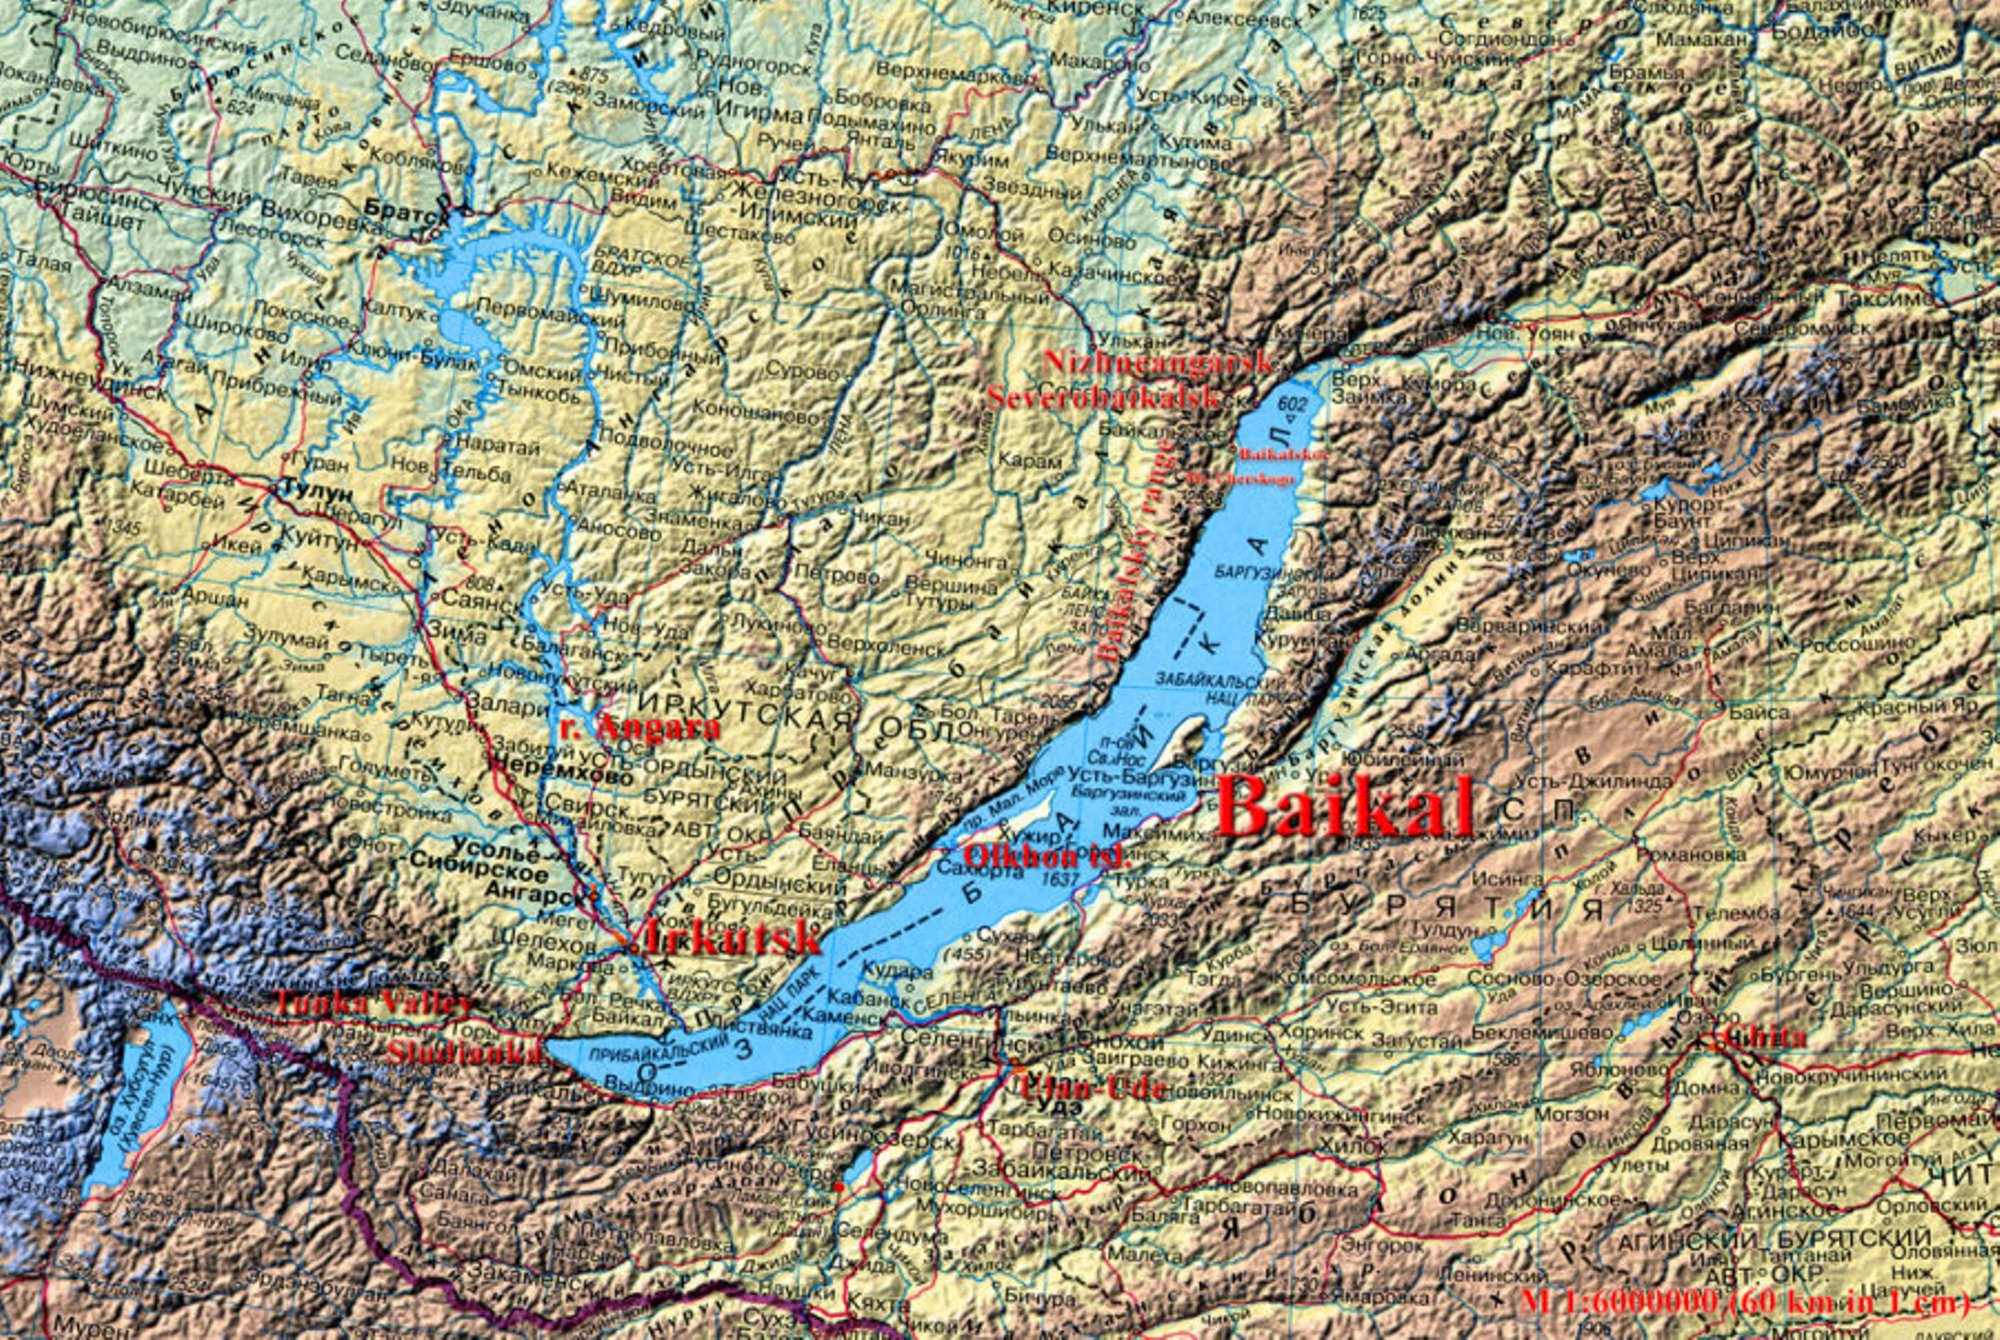 Найти озеро байкал на карте. Озеро Байкал на карте. Озеро Байкал на карте России. Озеро Байкал карта географическая.